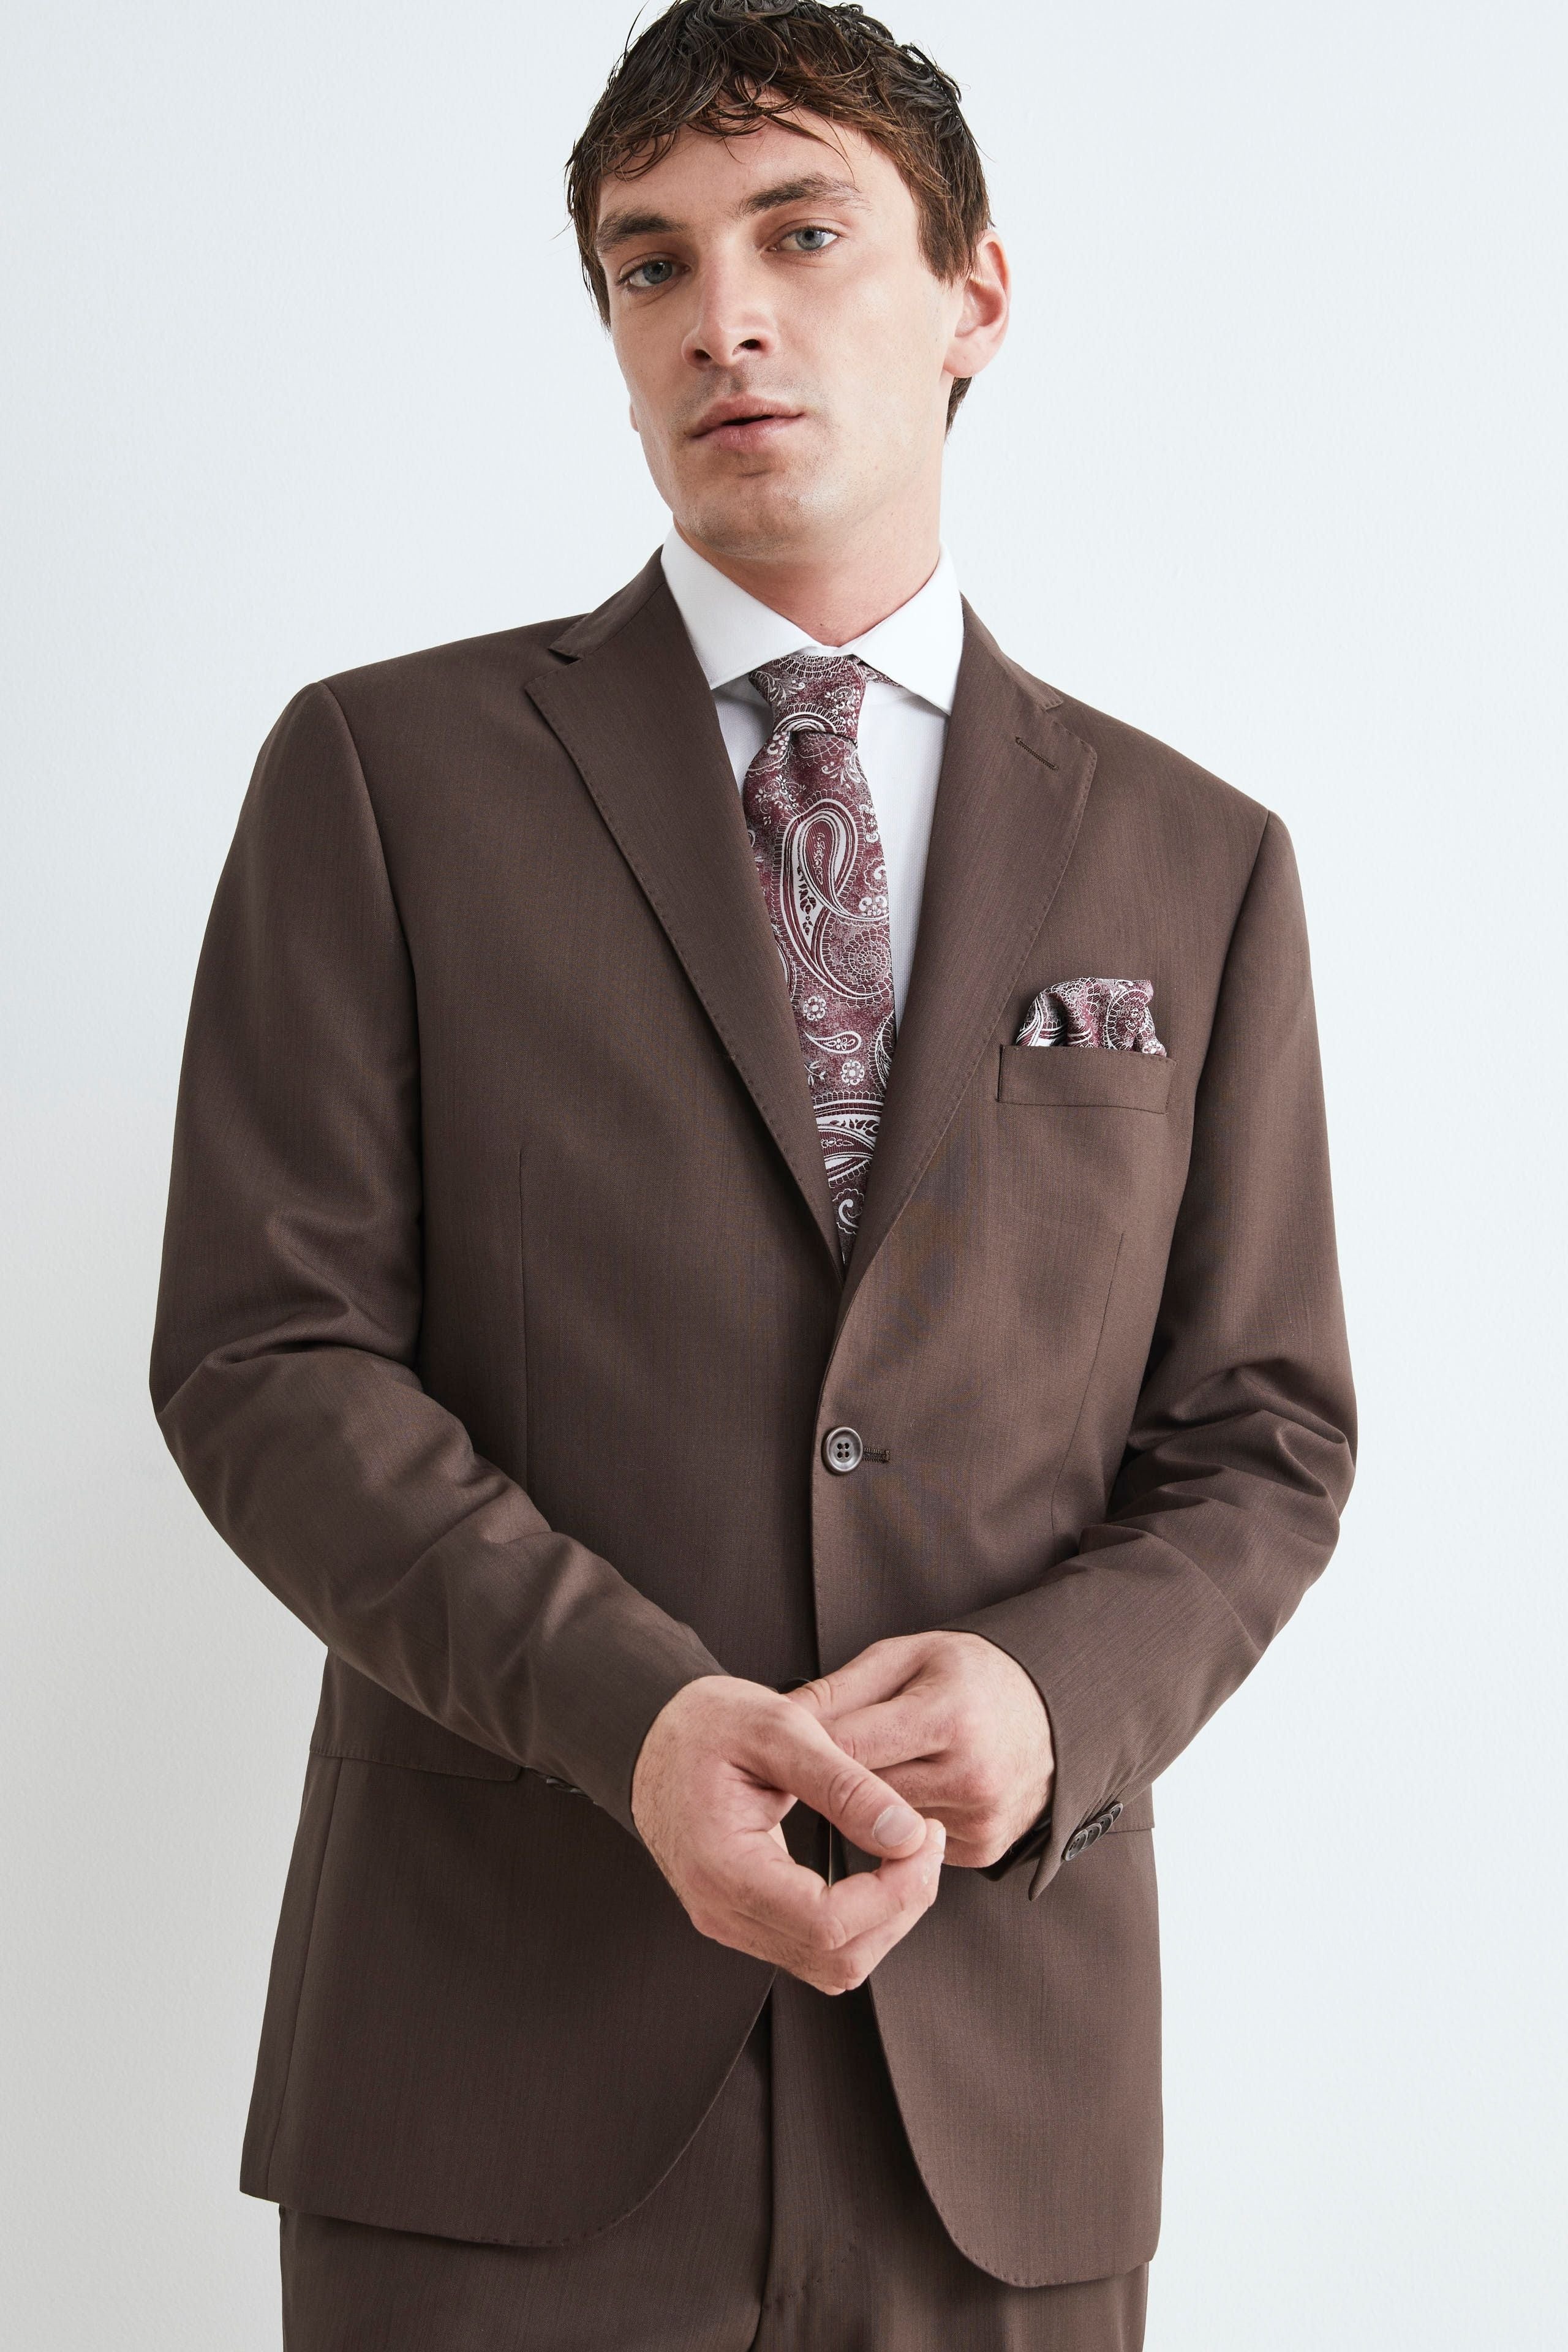 Men’s formal Suit - brown